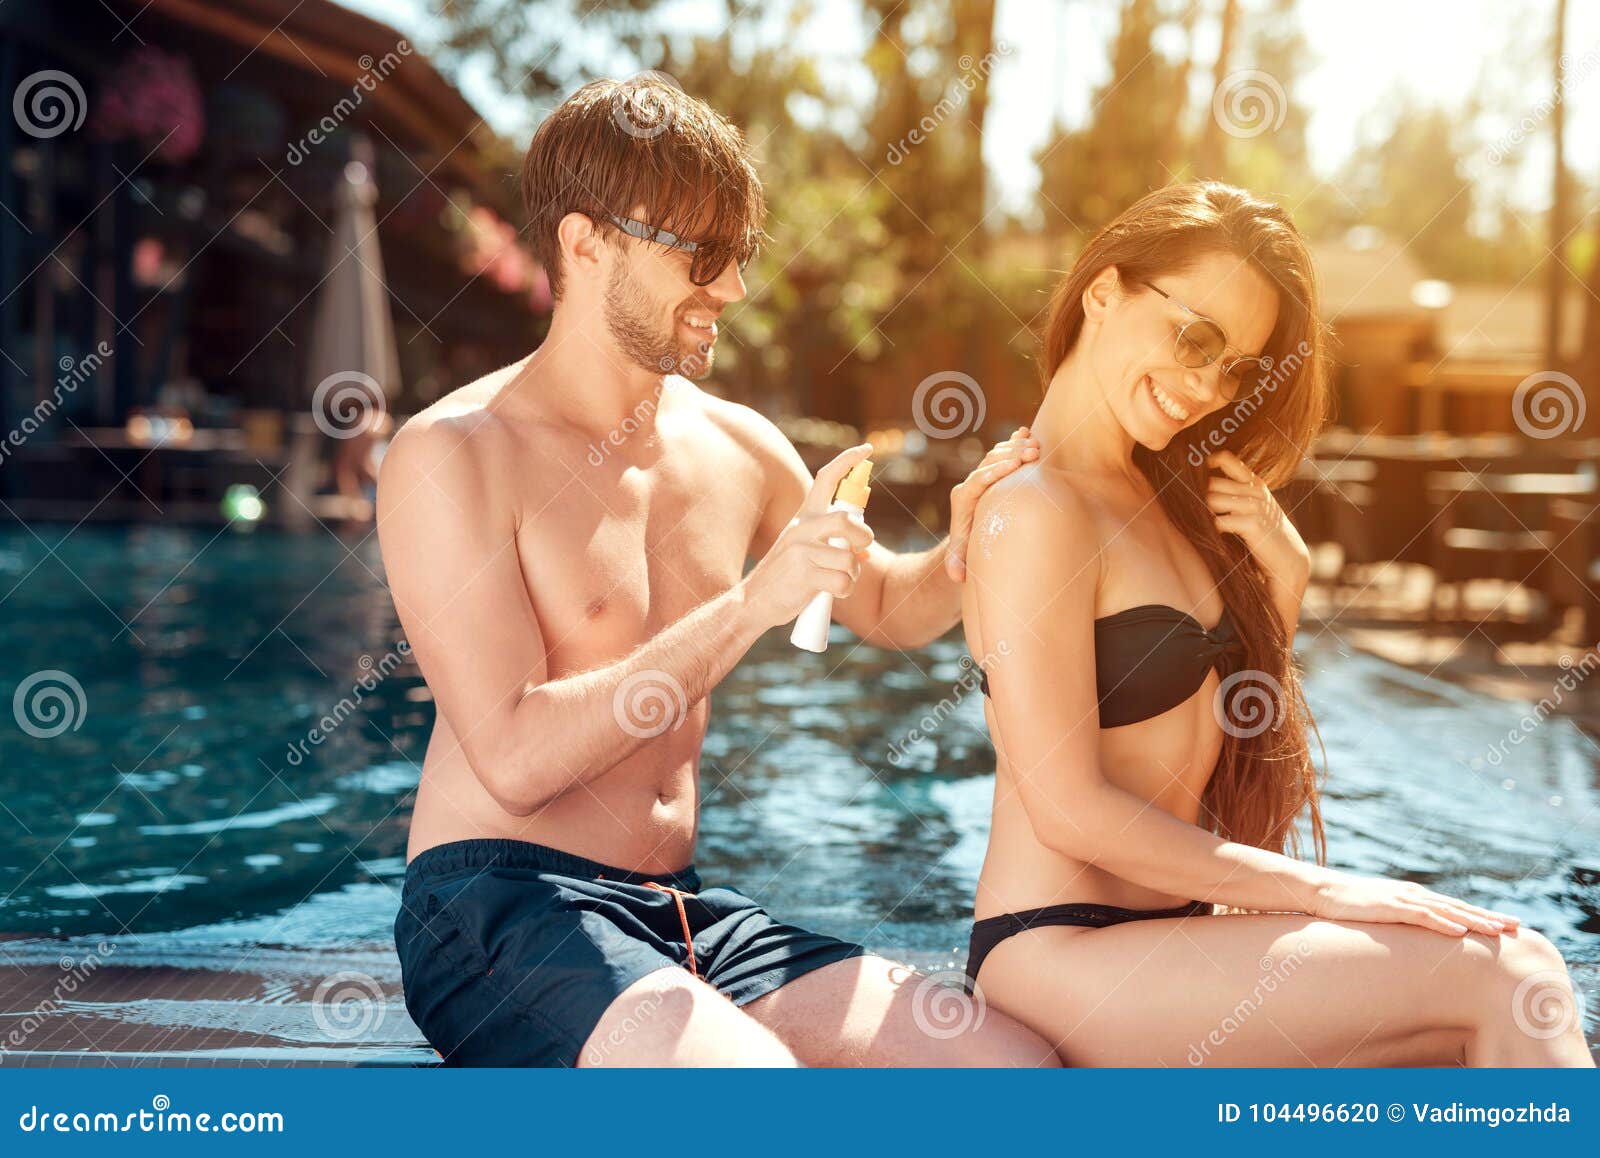 Парни трут девушек. Парень мажет девушку кремом на пляже. Девушка мажет парня кремом. Женщина и мужчина фотосессия возле бассейна. Парень с девушкой около бассейна.